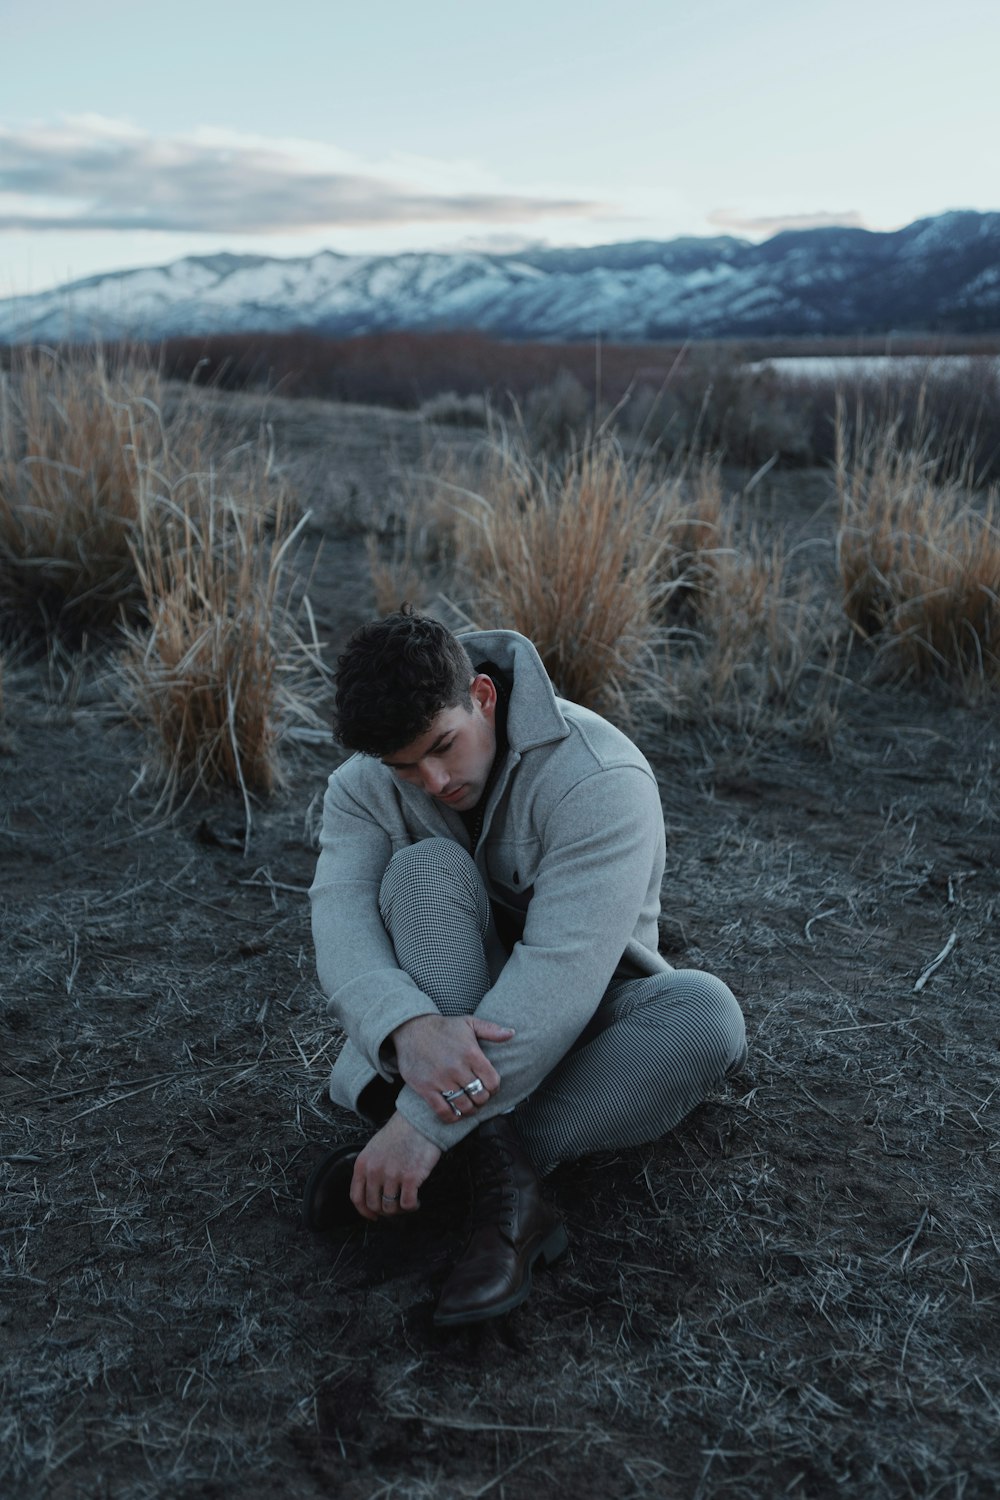 a person kneeling in a field